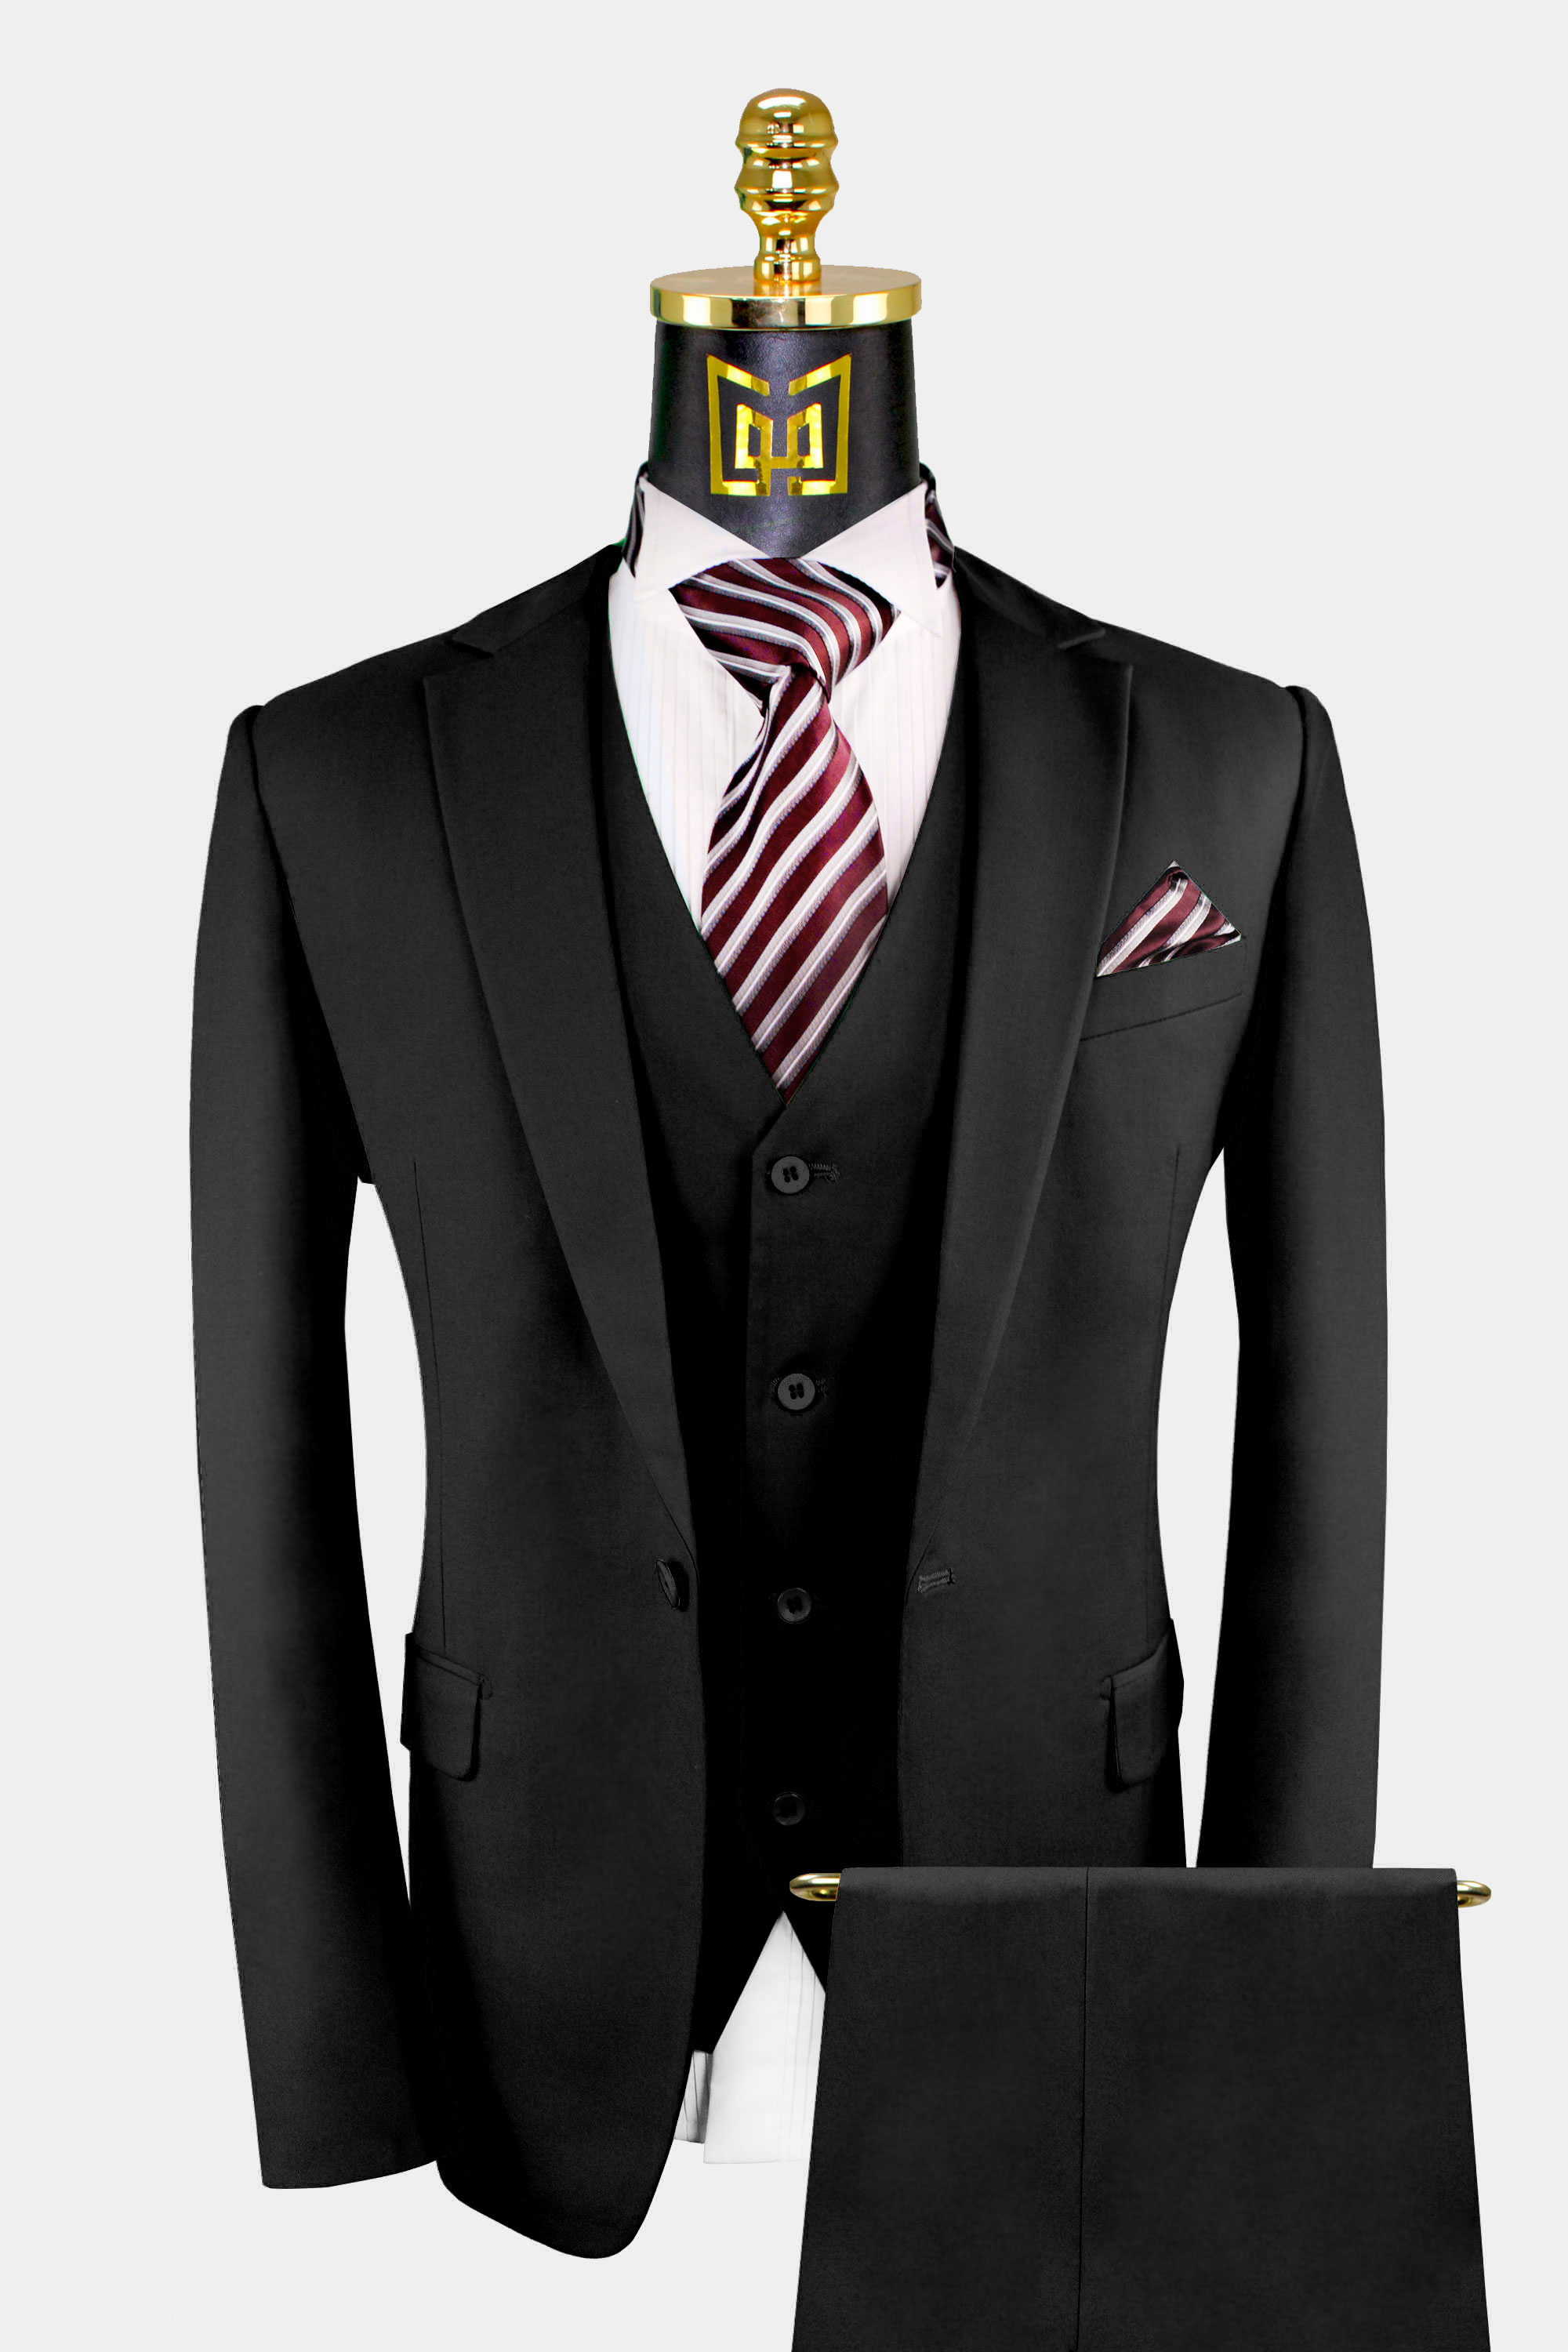 Mens-3Piece-Black-Suit-Groom-Wedding-Prom-Tuxedo-from-Gentlemansguru.com